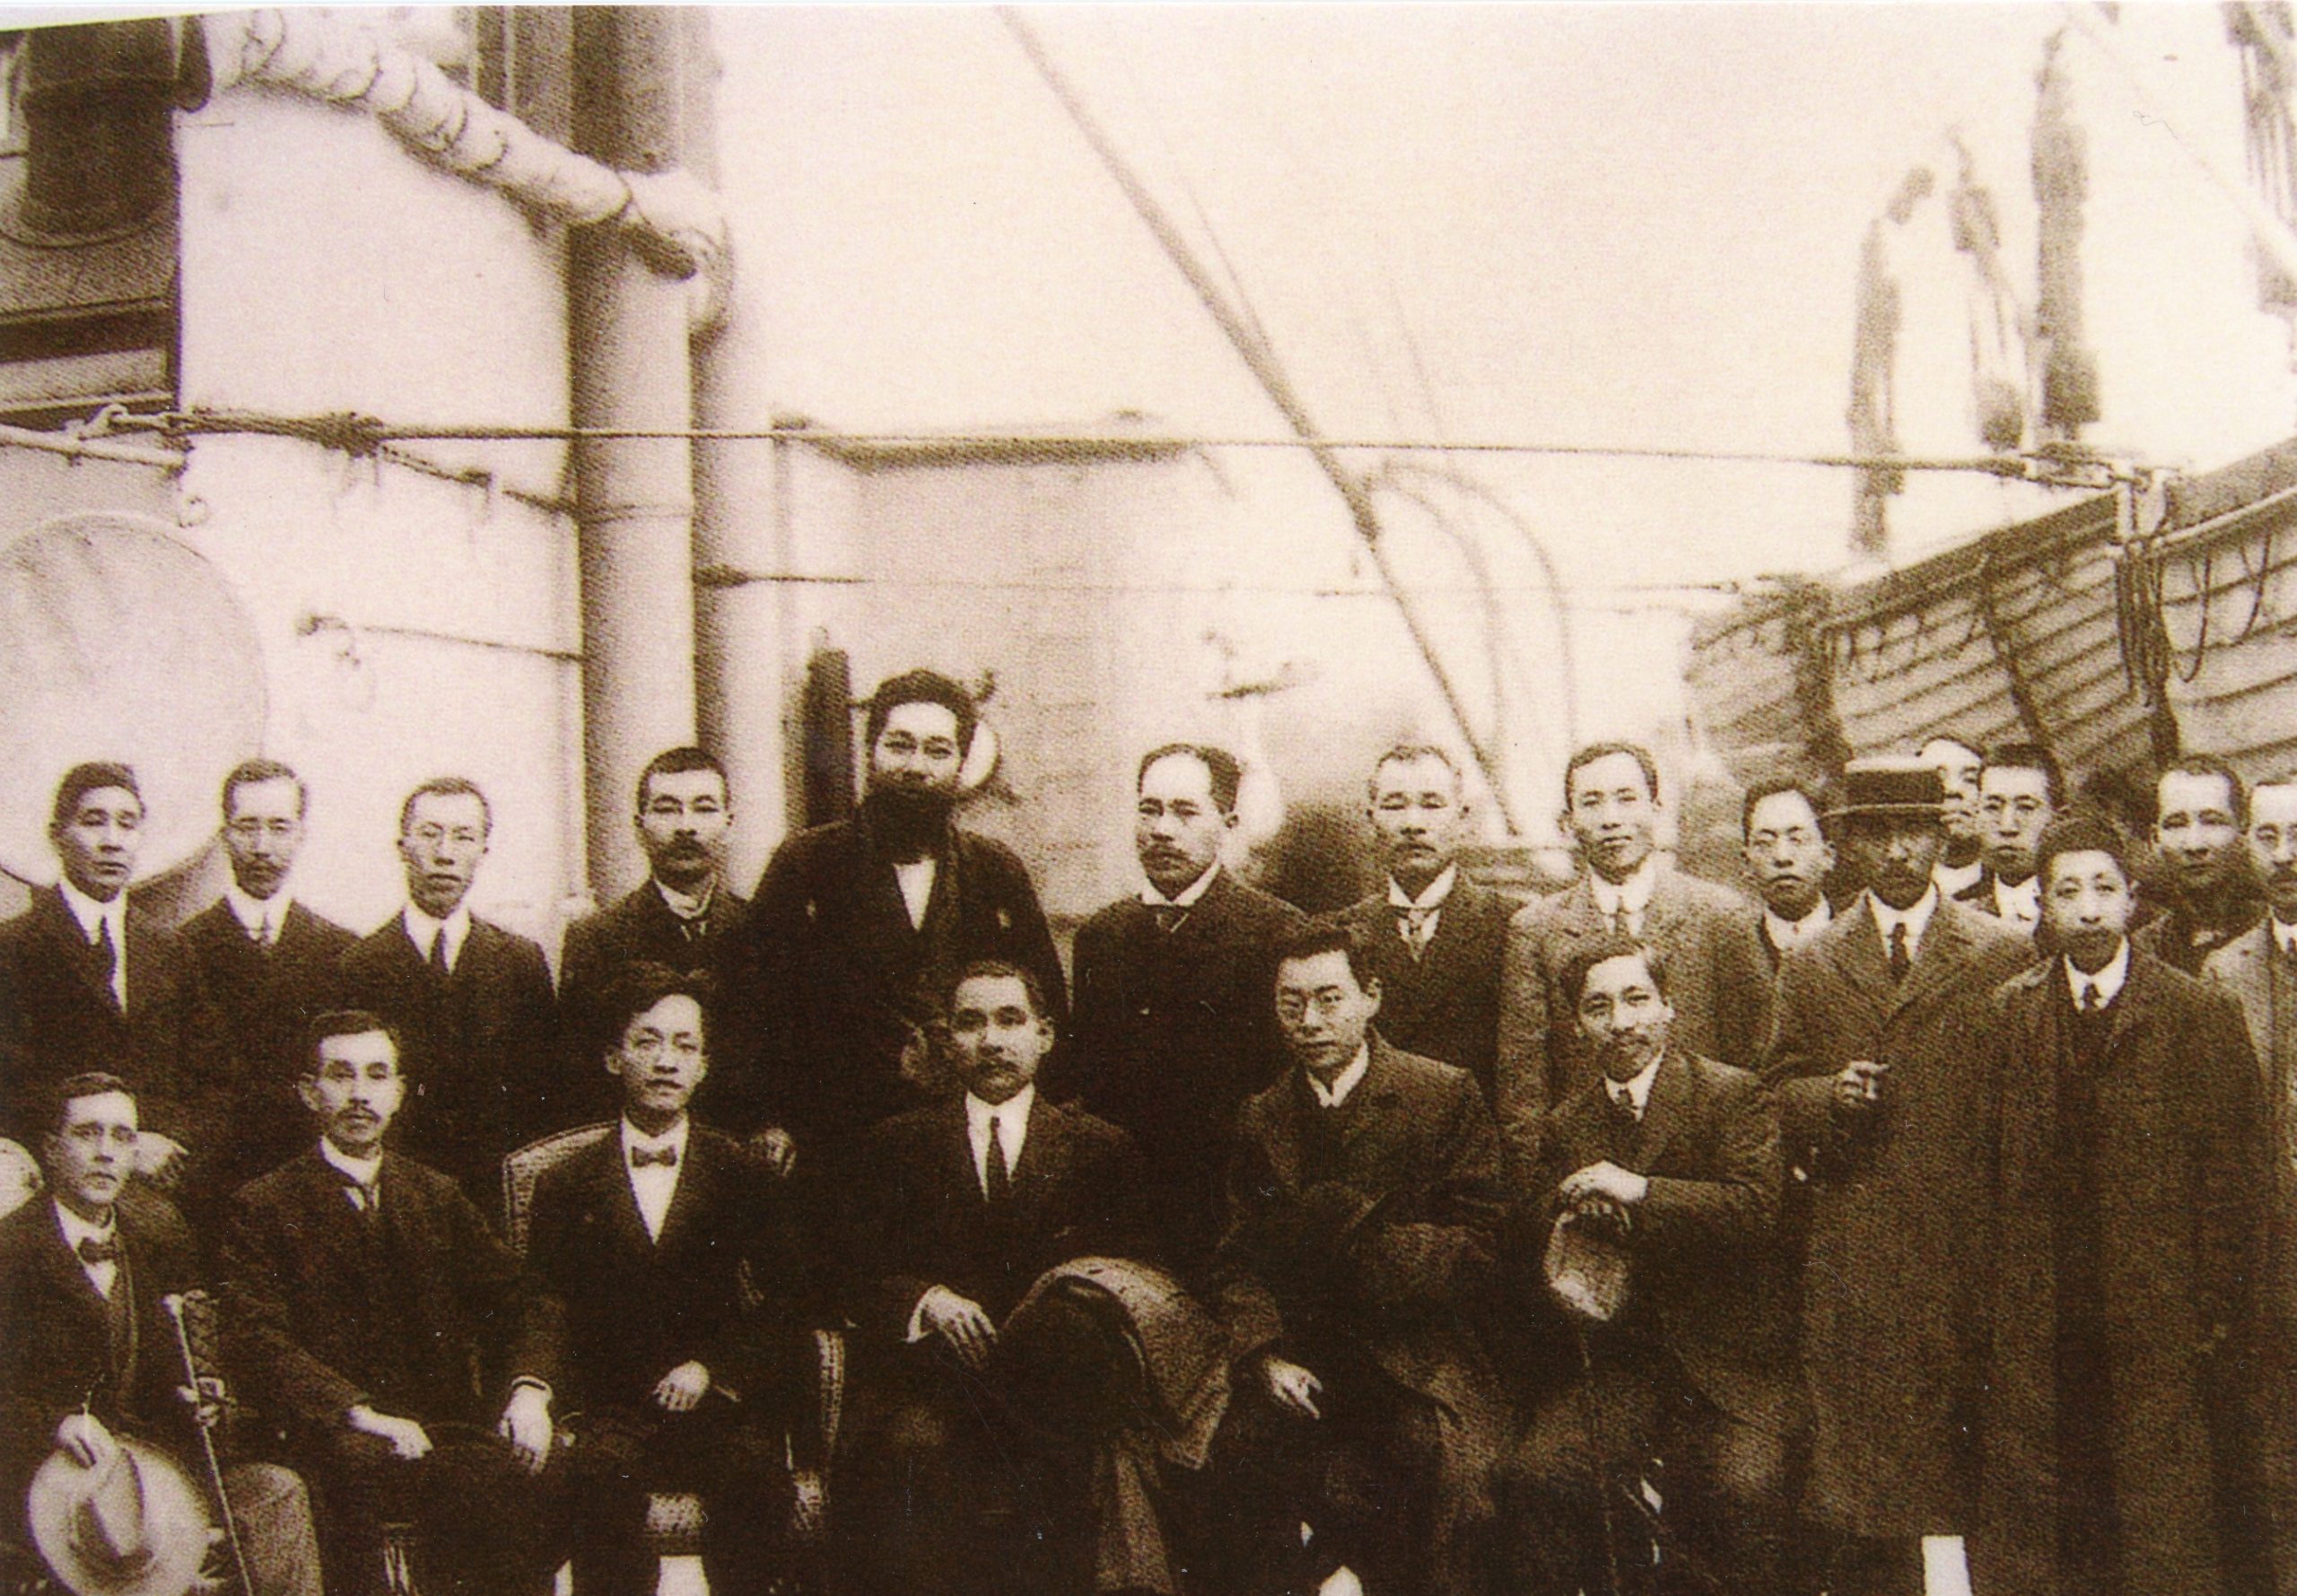 在構思銅像造型時，朱達誠先生參考了1911年12月21日孫中山先生乘坐「地雪夏號」路經香港時，在船上與友人的合照。圖為朱達誠先生提供他用作參考的照片。 